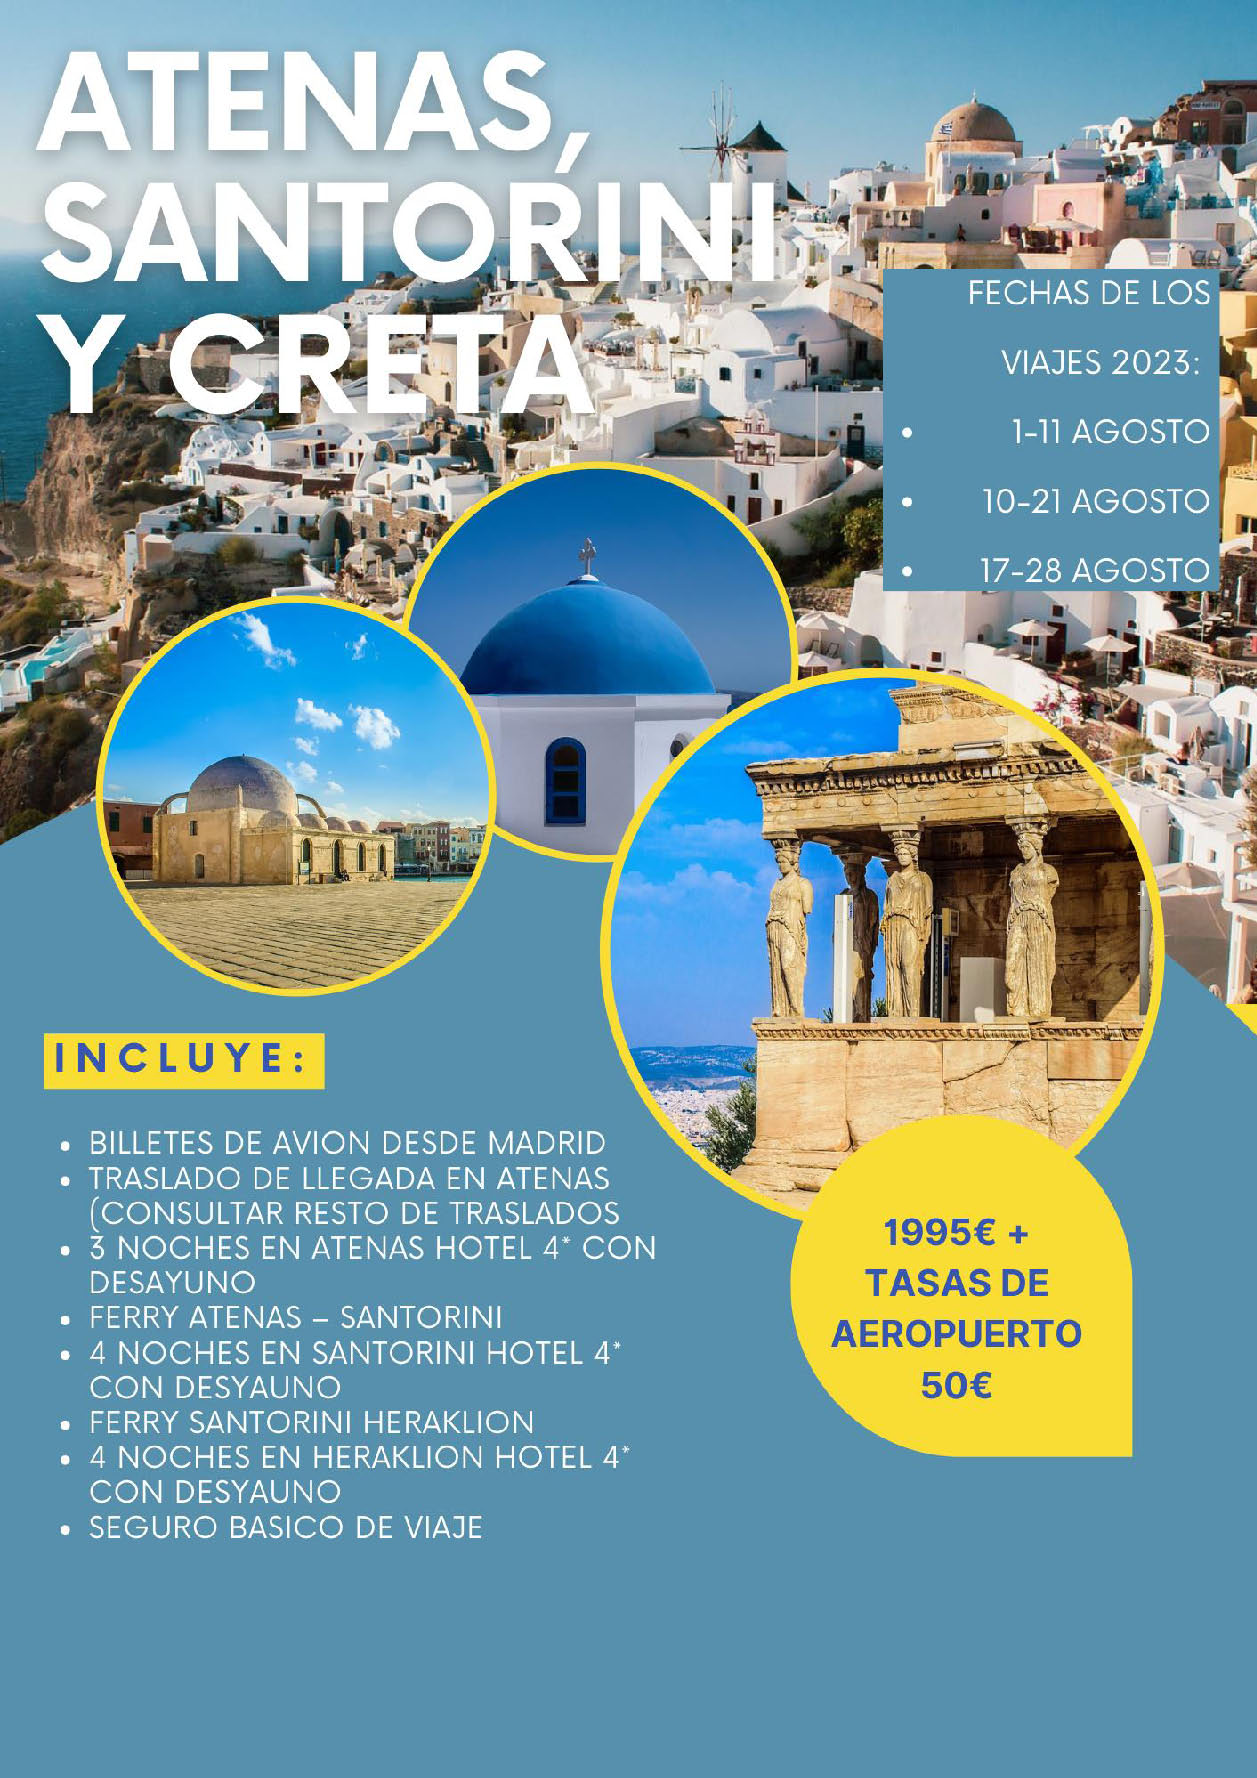 Oferta Grecia Vacaciones Agosto 2023 Grecia Atenas Santorini y Creta 12 dias salida en vuelo directo a Atenas desde Madrid